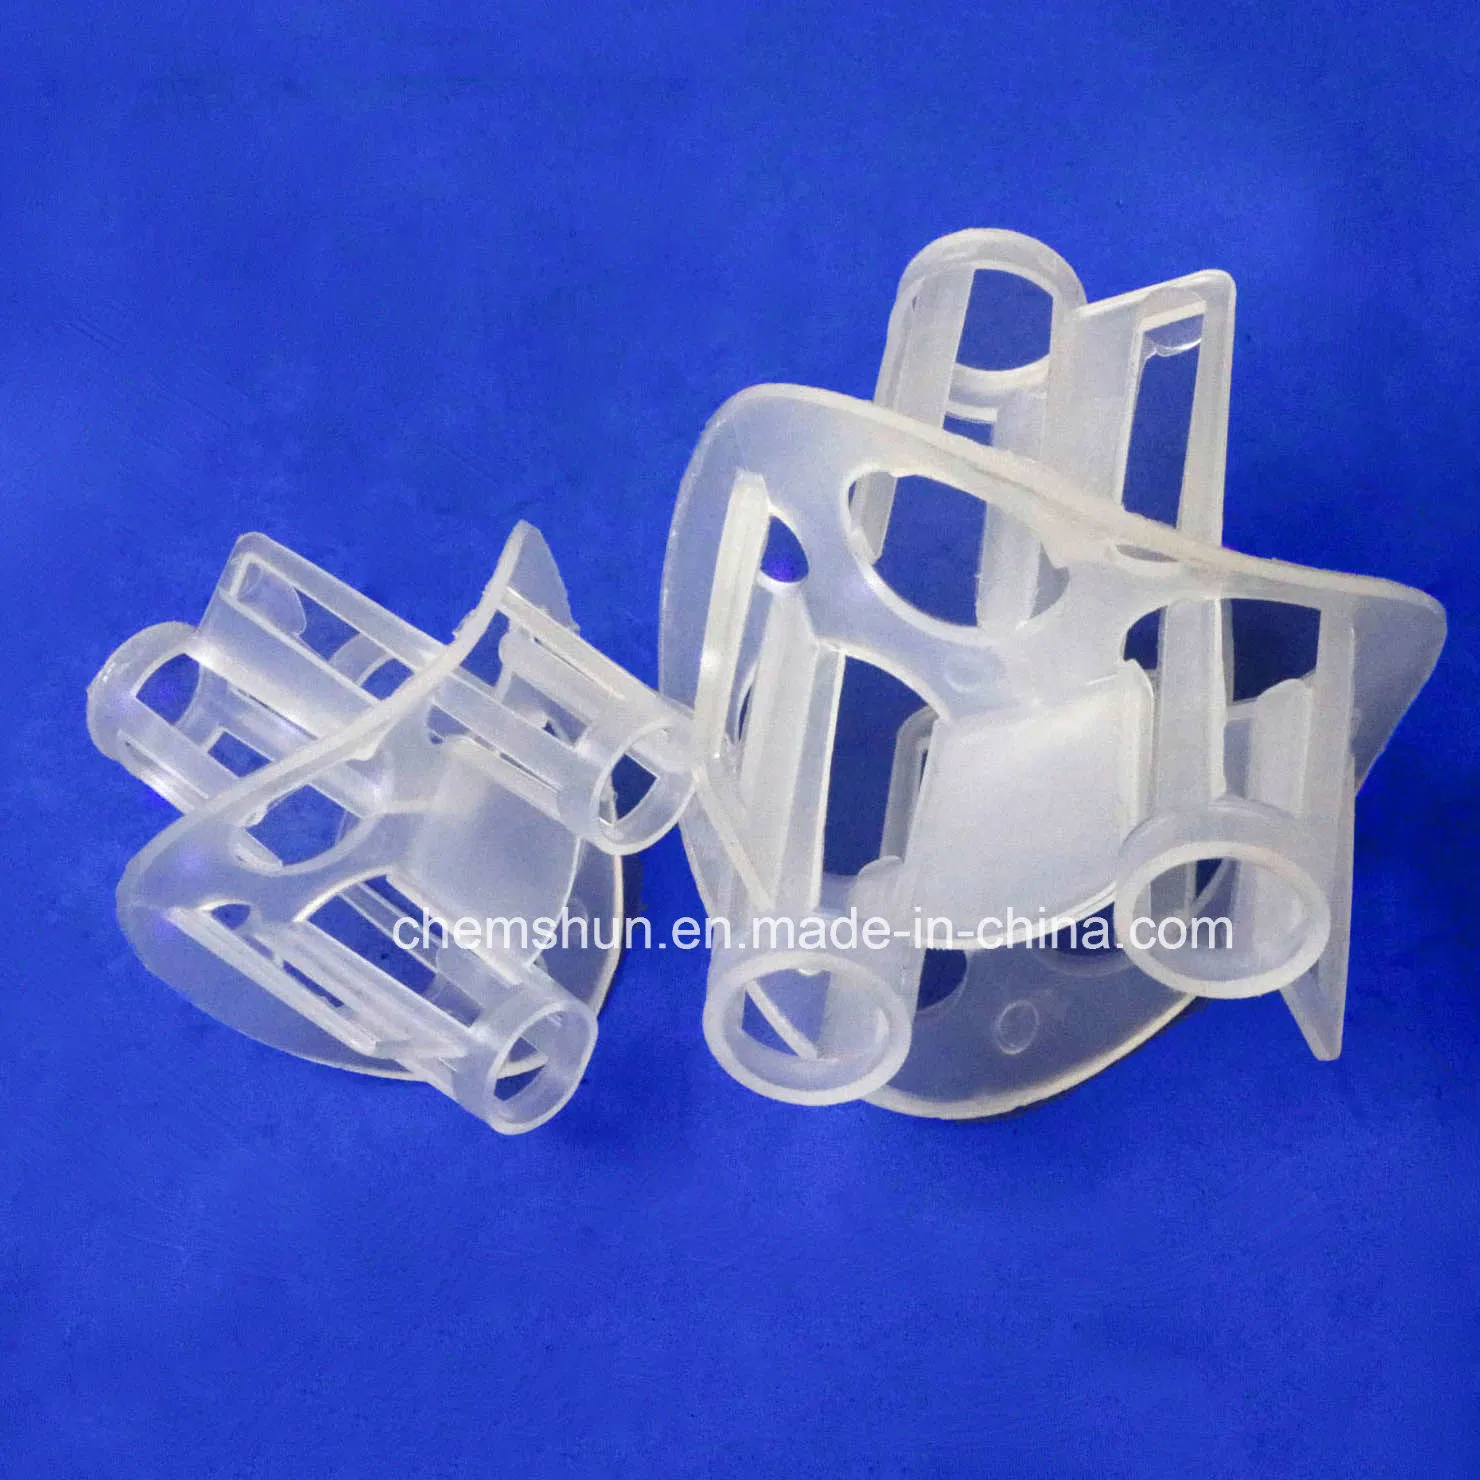 Plastic Heilex Rings comme garnissage de tour d'absorption.